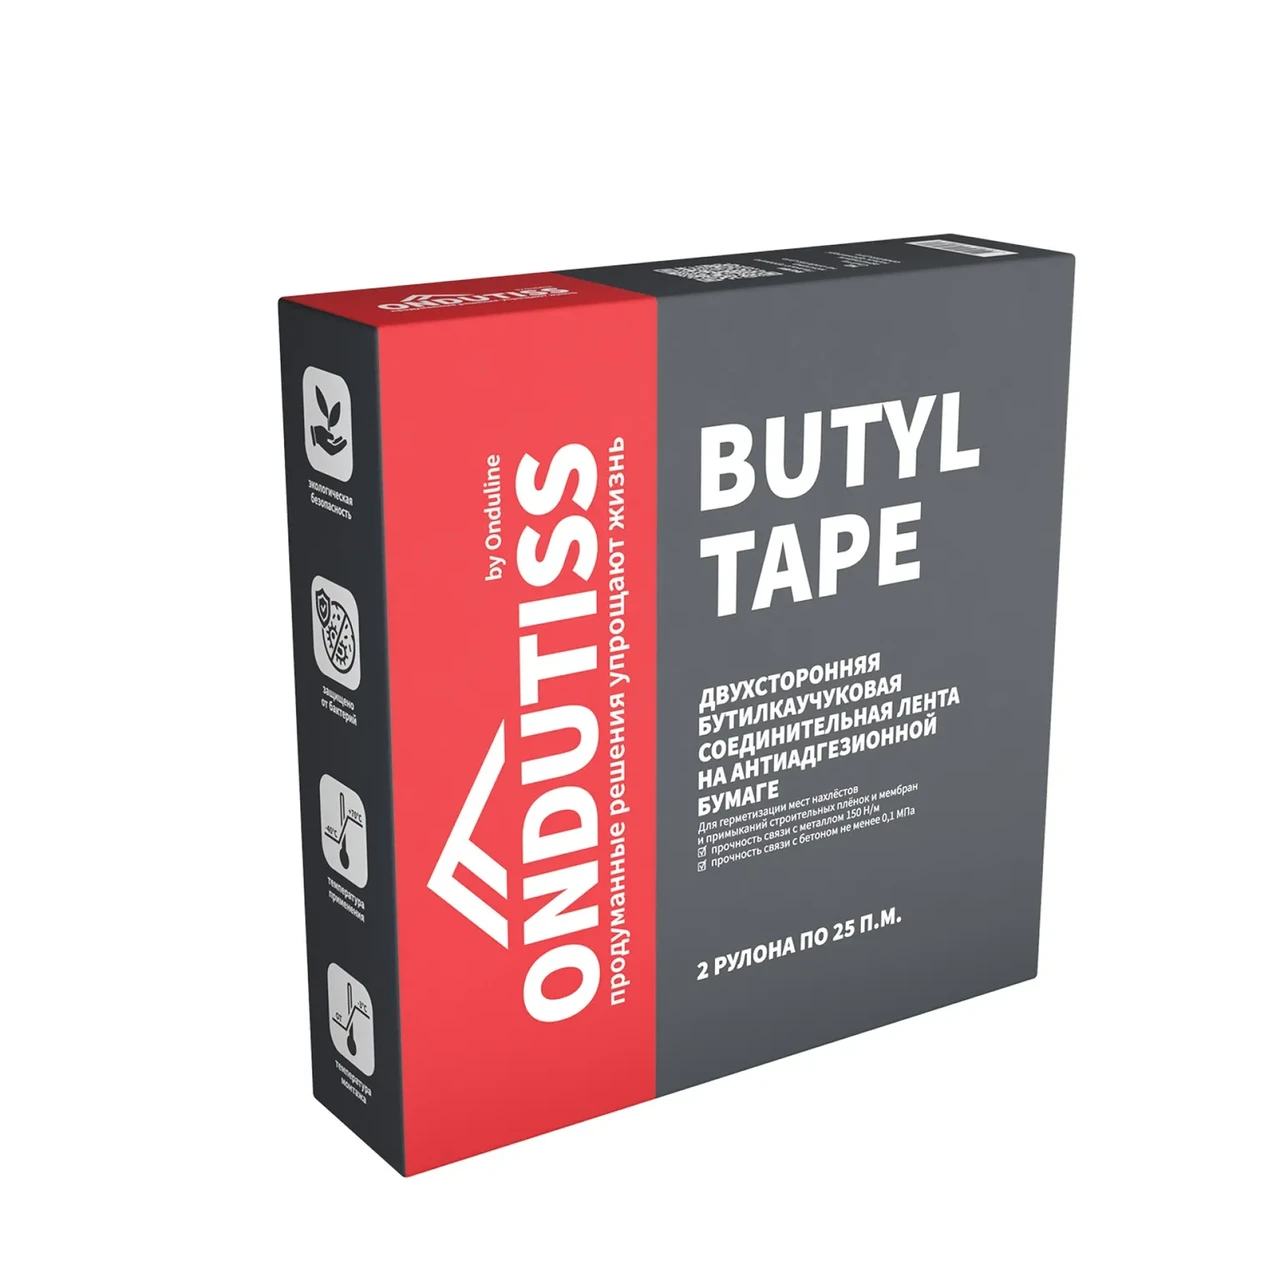 Лента соединительная ONDUTISS Butyl Tape двусторонняя 15мм х 50м